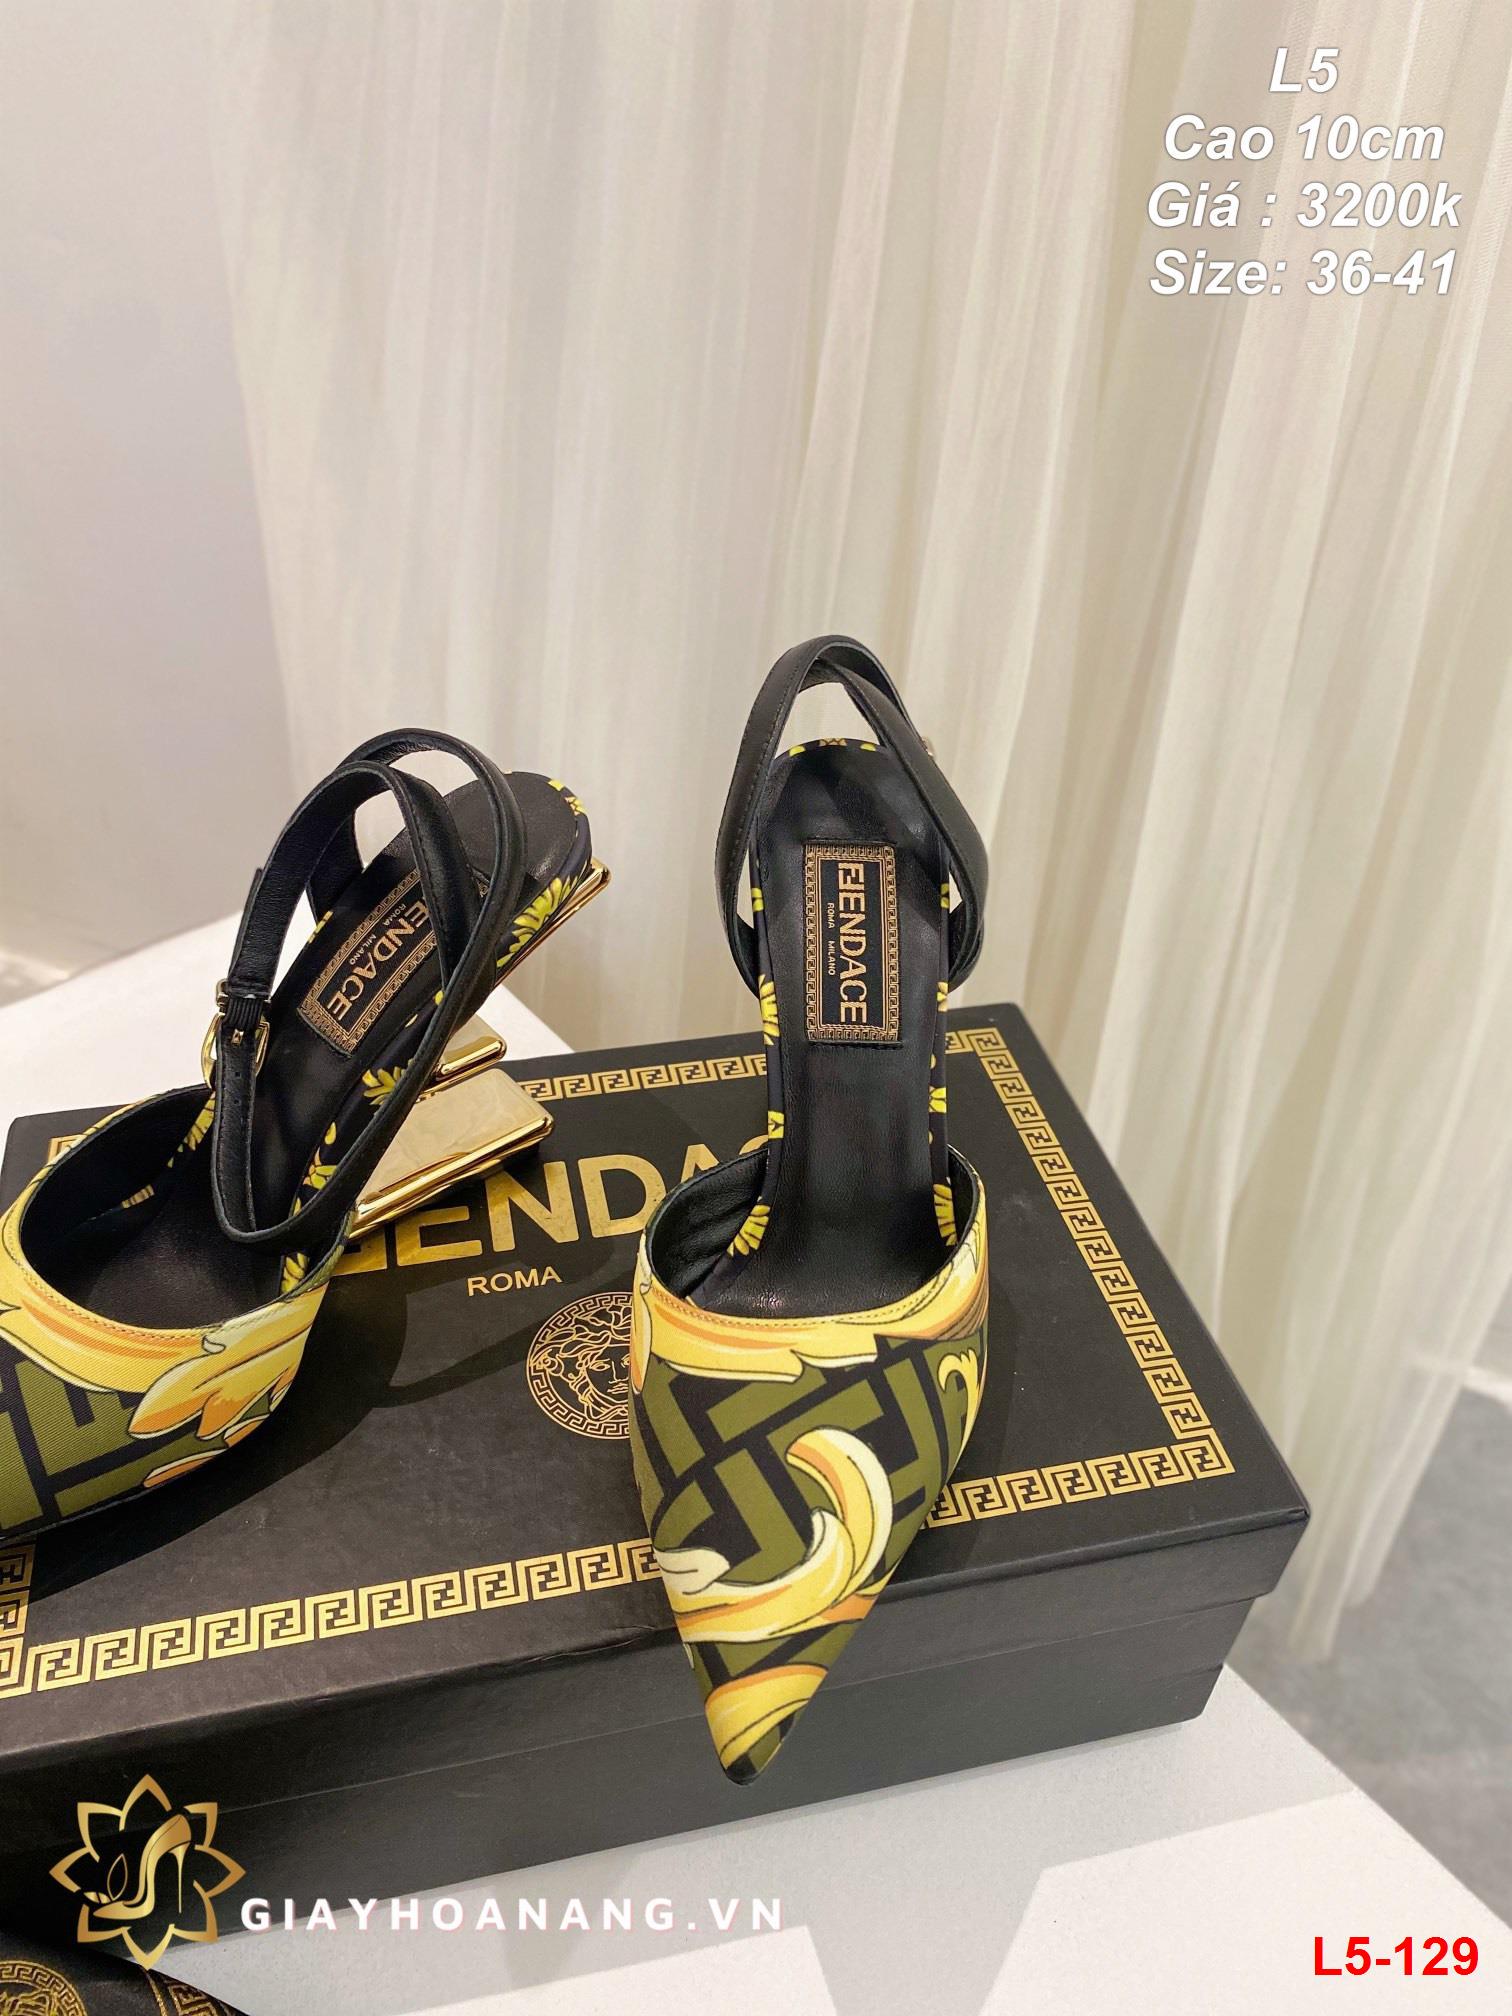 L5-129 Fendi sandal cao 9cm siêu cấp